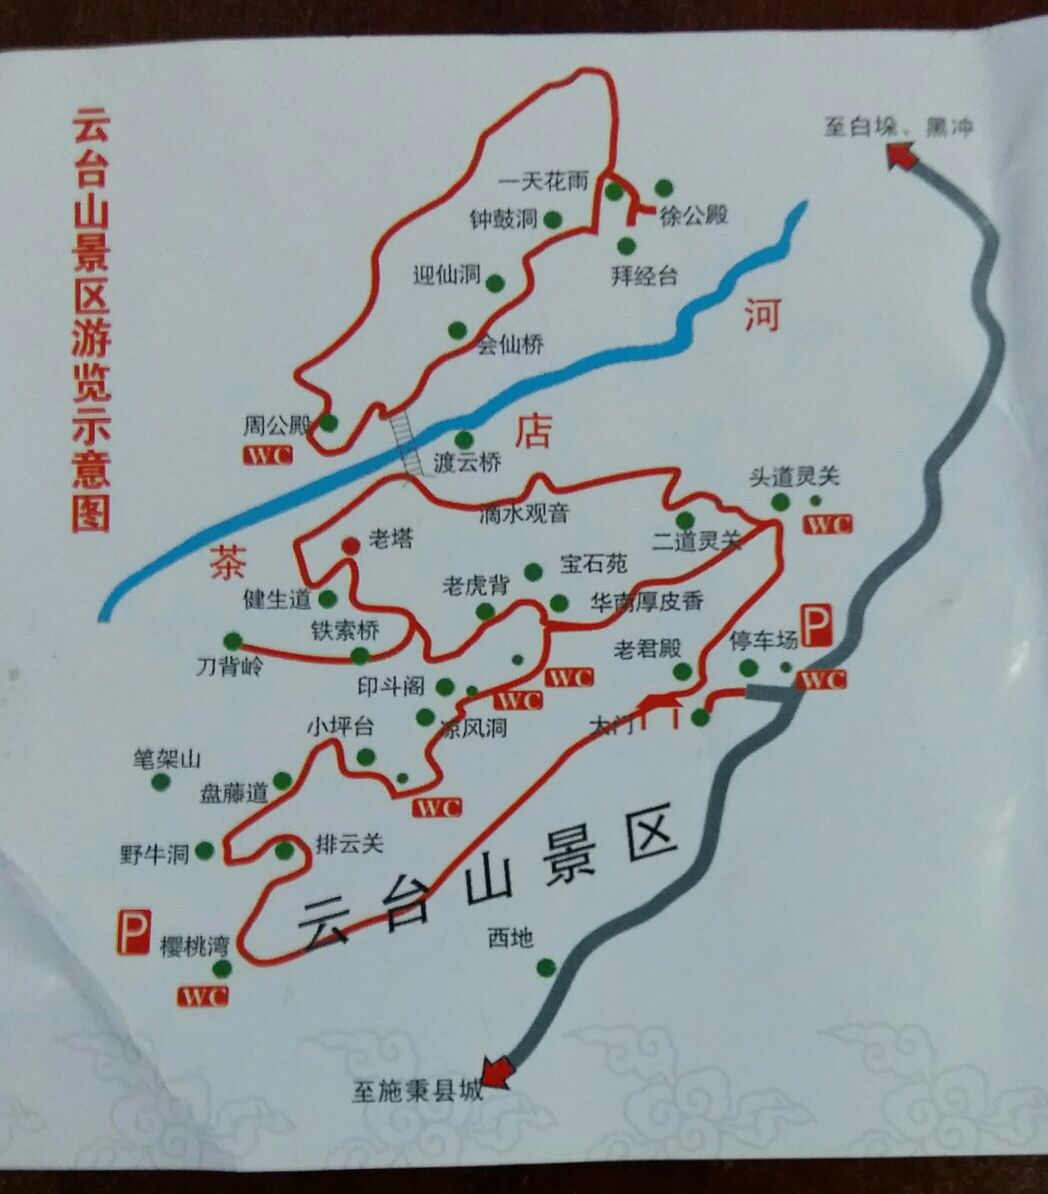 海上云台山景区路线图片